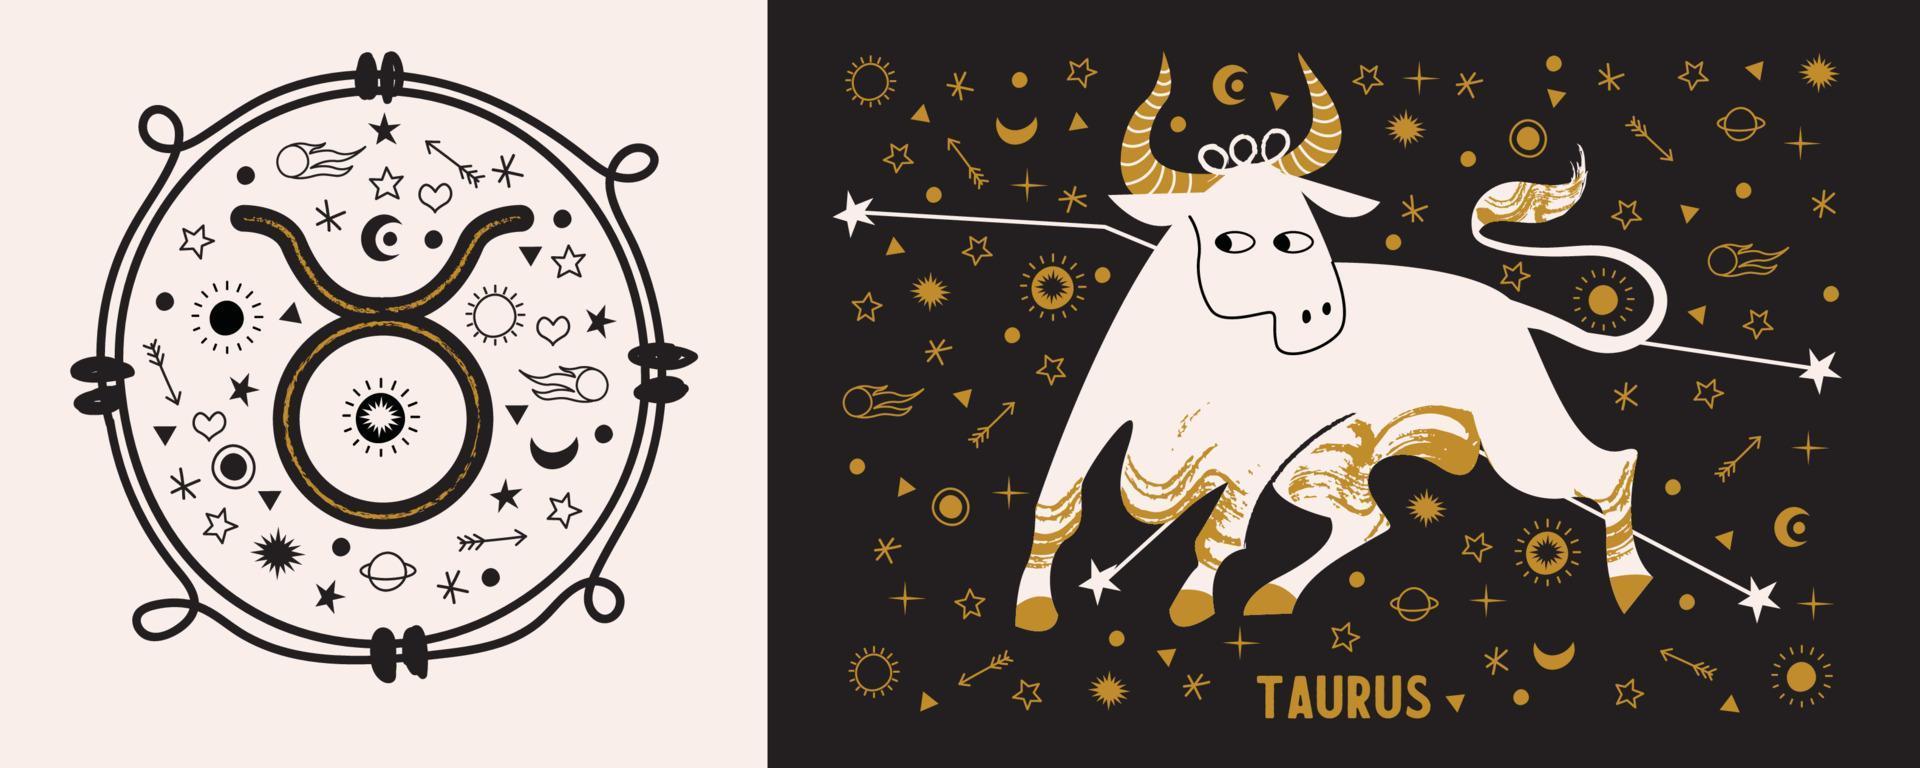 taurus é um signo do zodíaco. horóscopo e astrologia. ilustração vetorial em um estilo simples. vetor